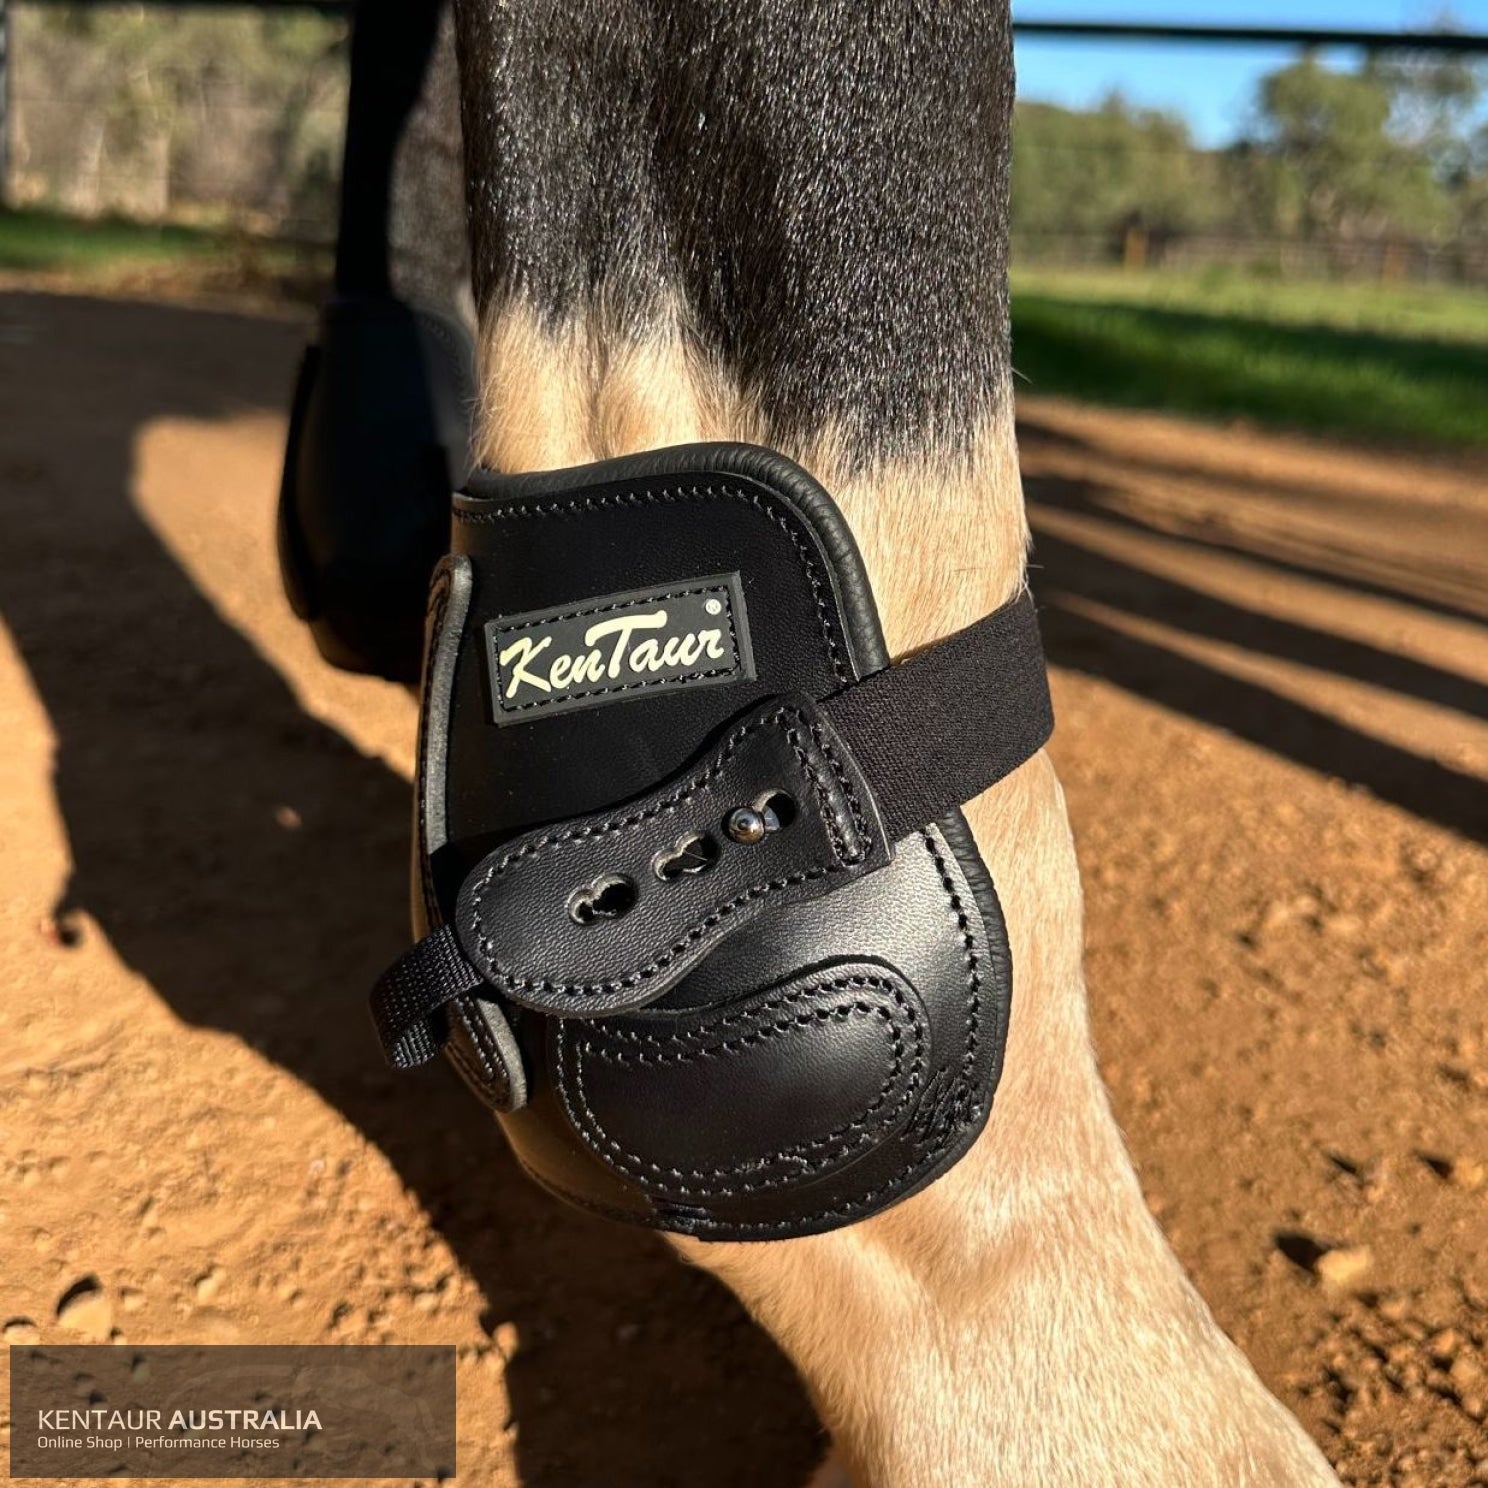 Kentaur ’Flicker 14cm’ Hind Boot Black / Full Jumping Boots